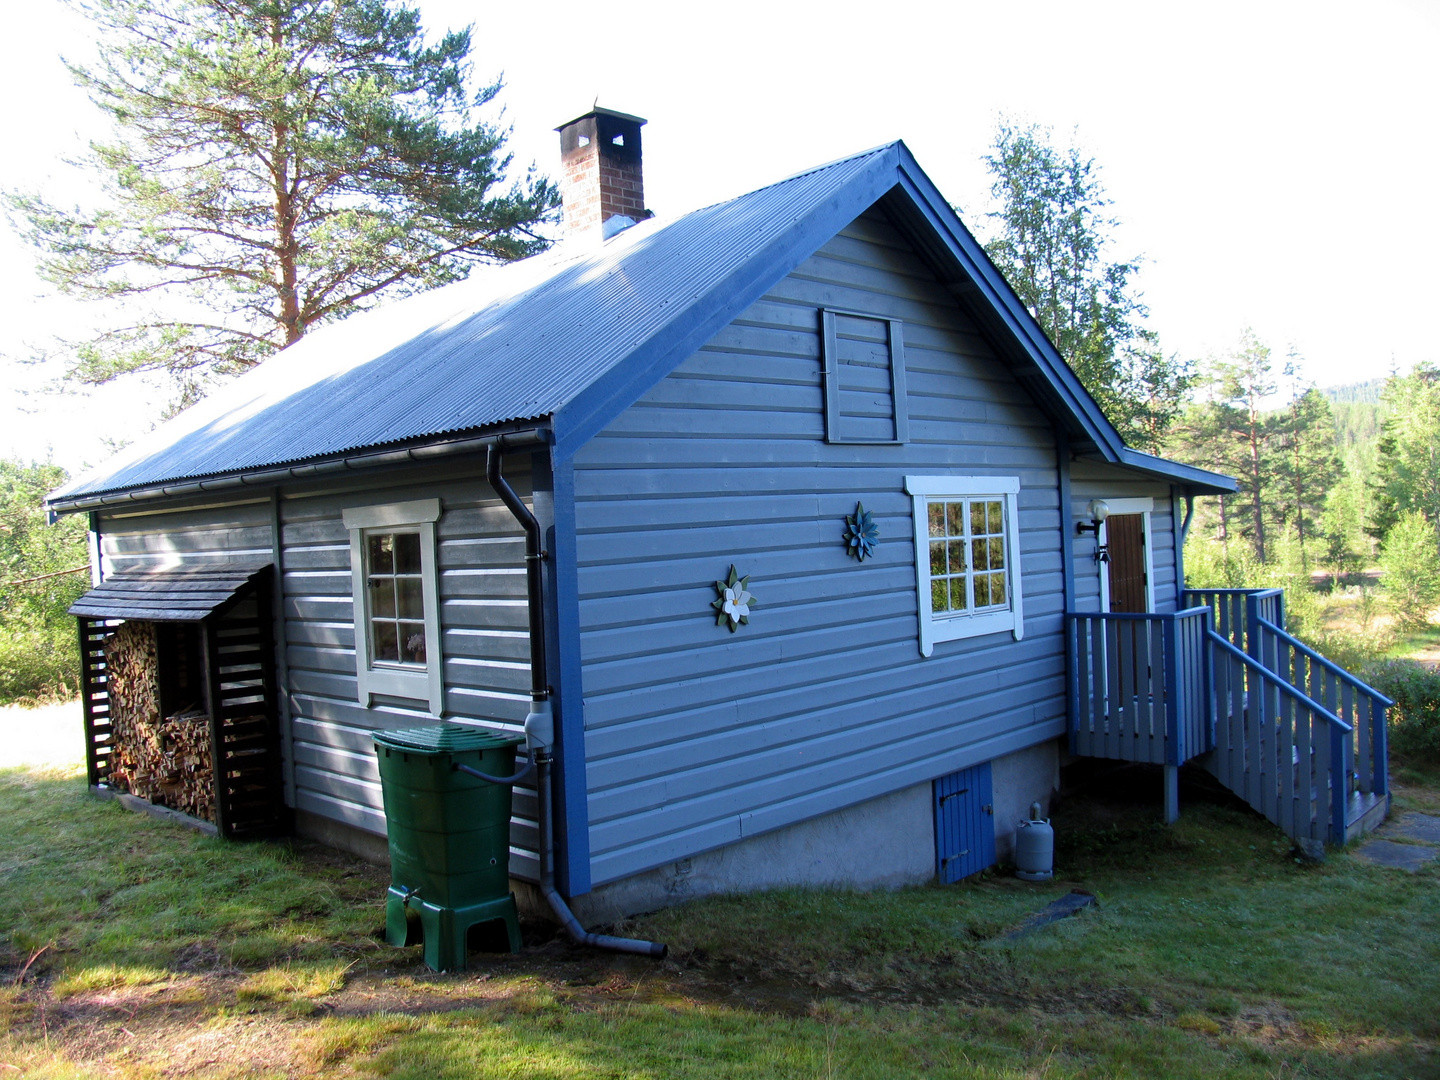 Mein Traum Vom Haus
 Mein Haus und Traum in Schweden sniff noch Foto